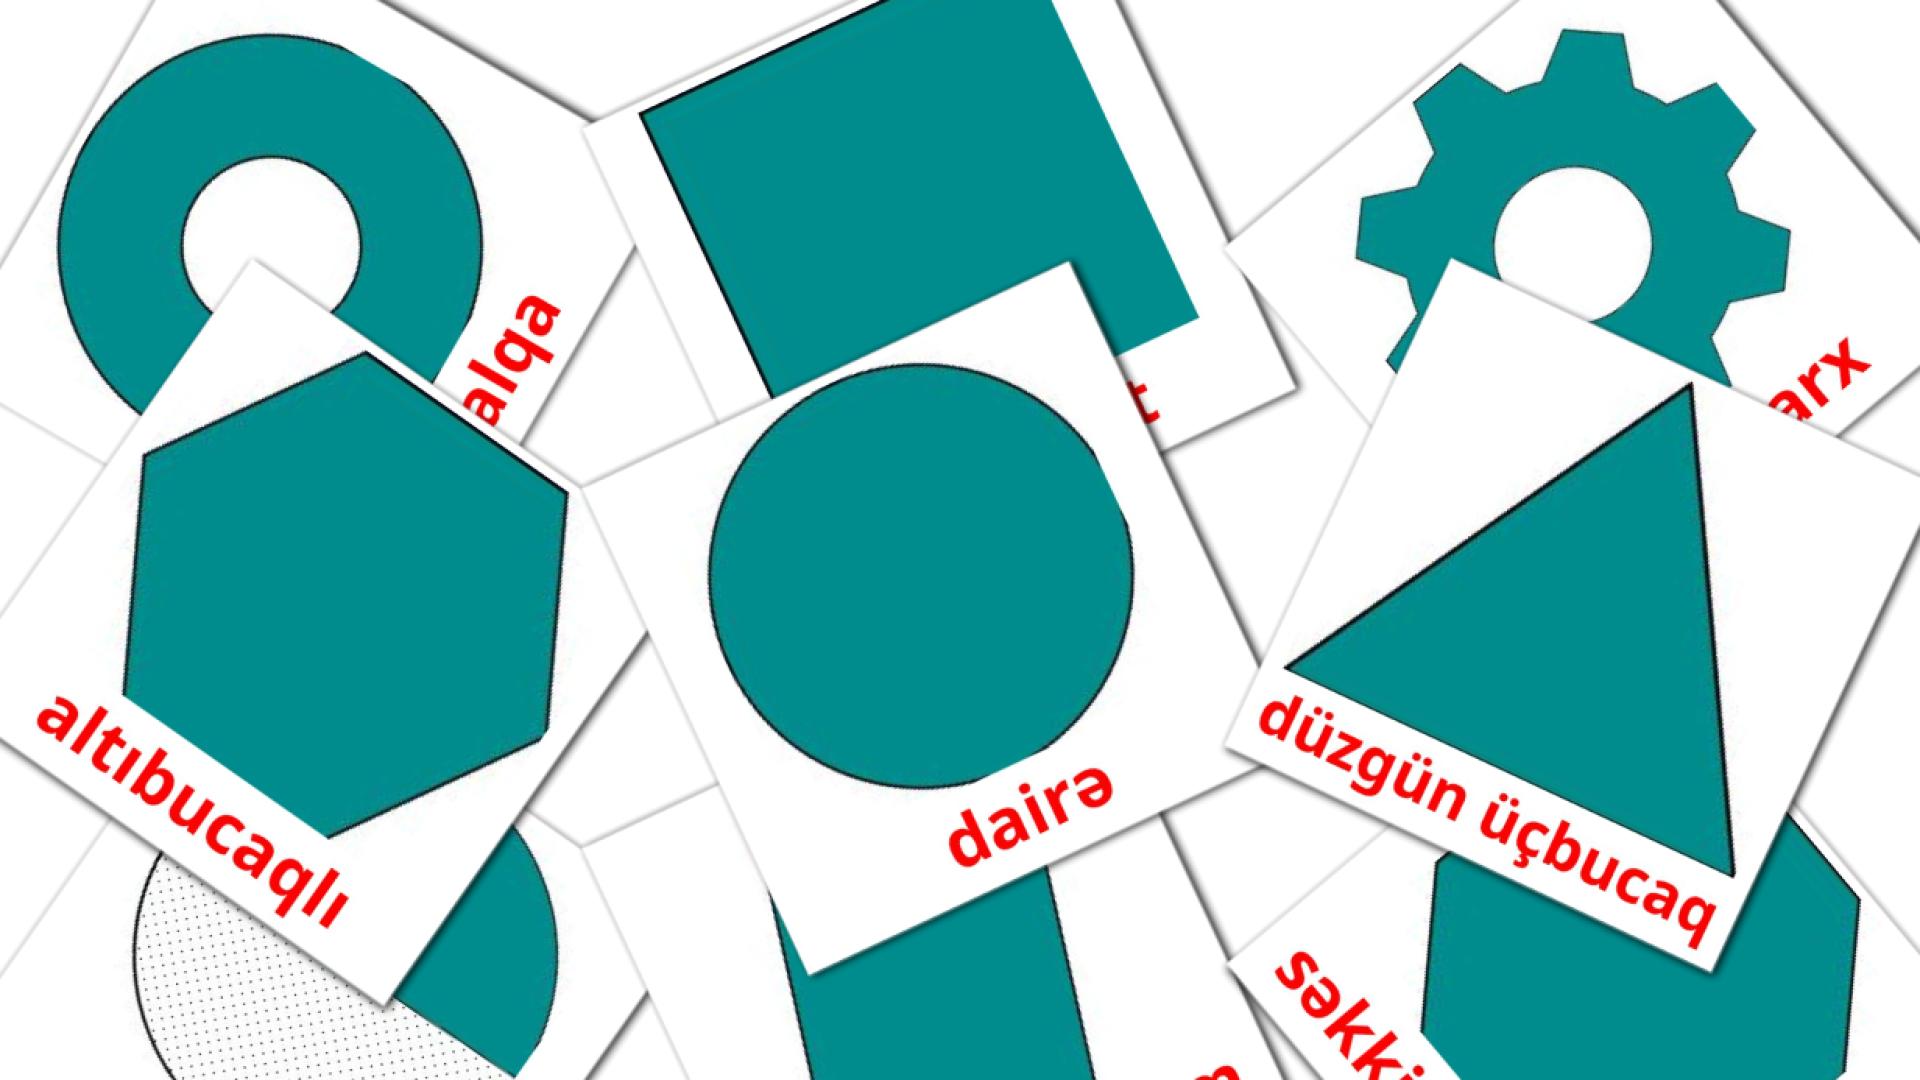 Vlakke figuren - azerbeidzjaanse woordenschatkaarten